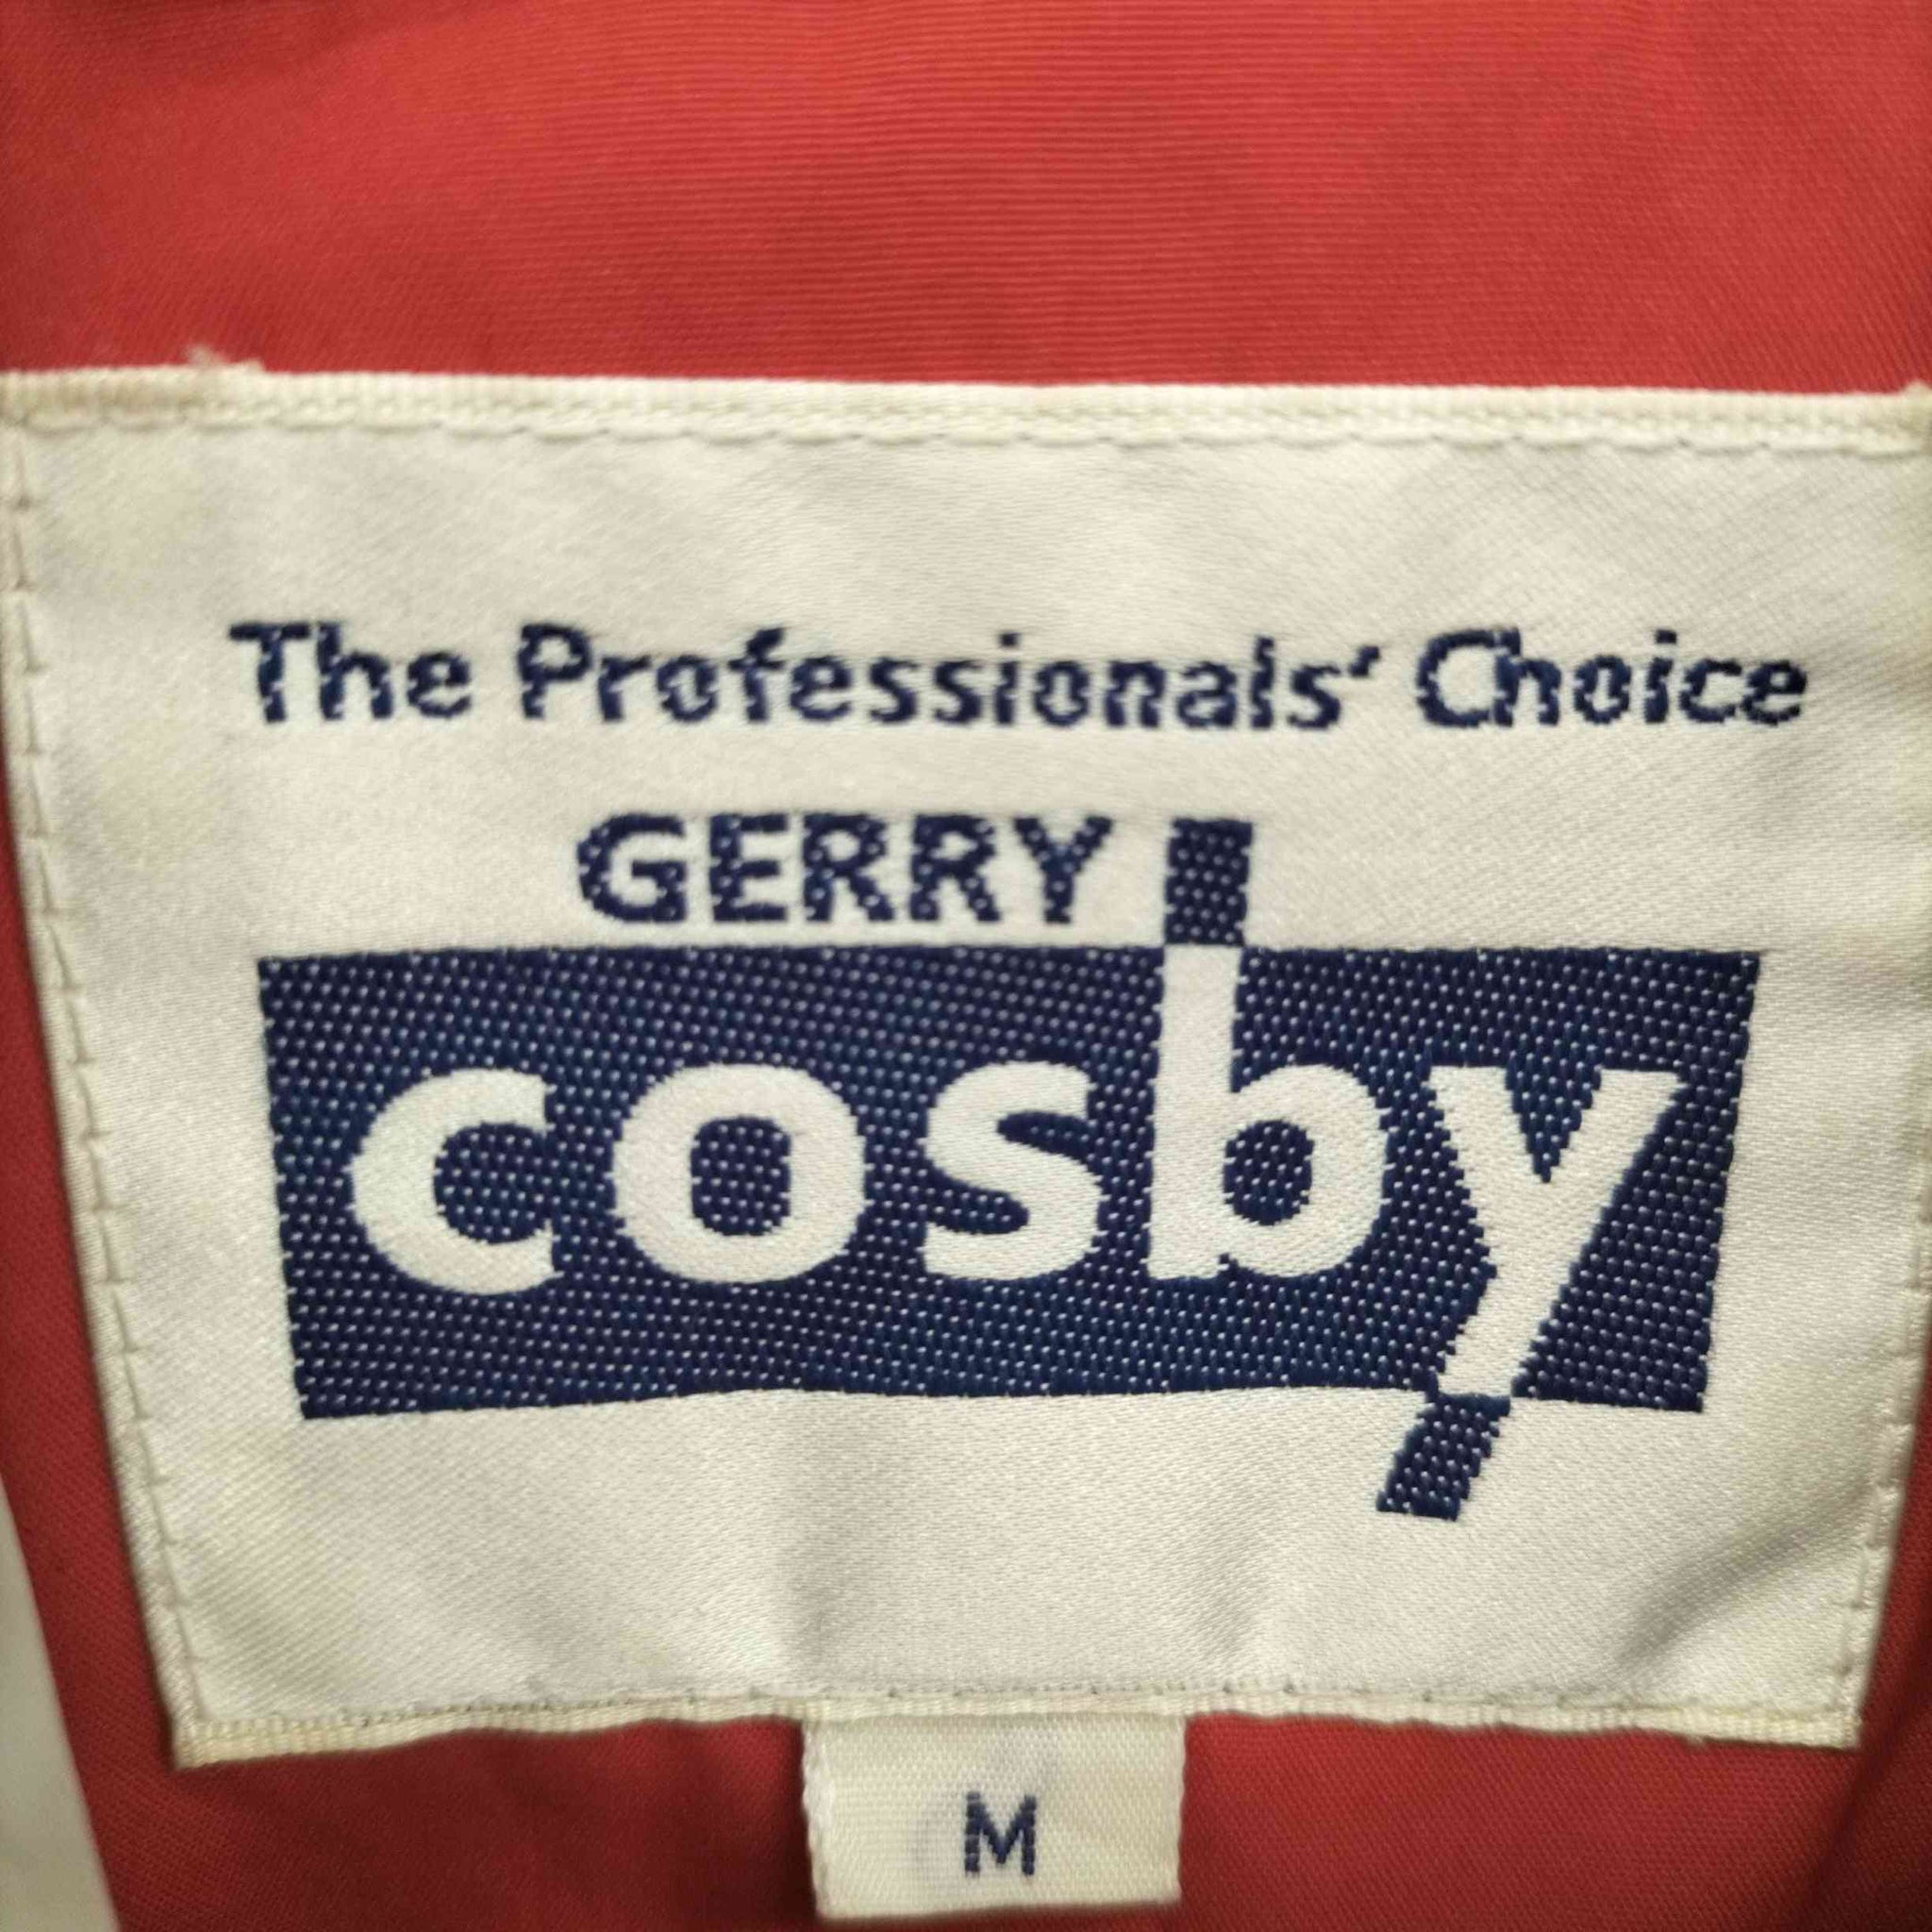 GERRY cosby(ジェリー コスビー)裏地フリースパイピングナイロンジャケット